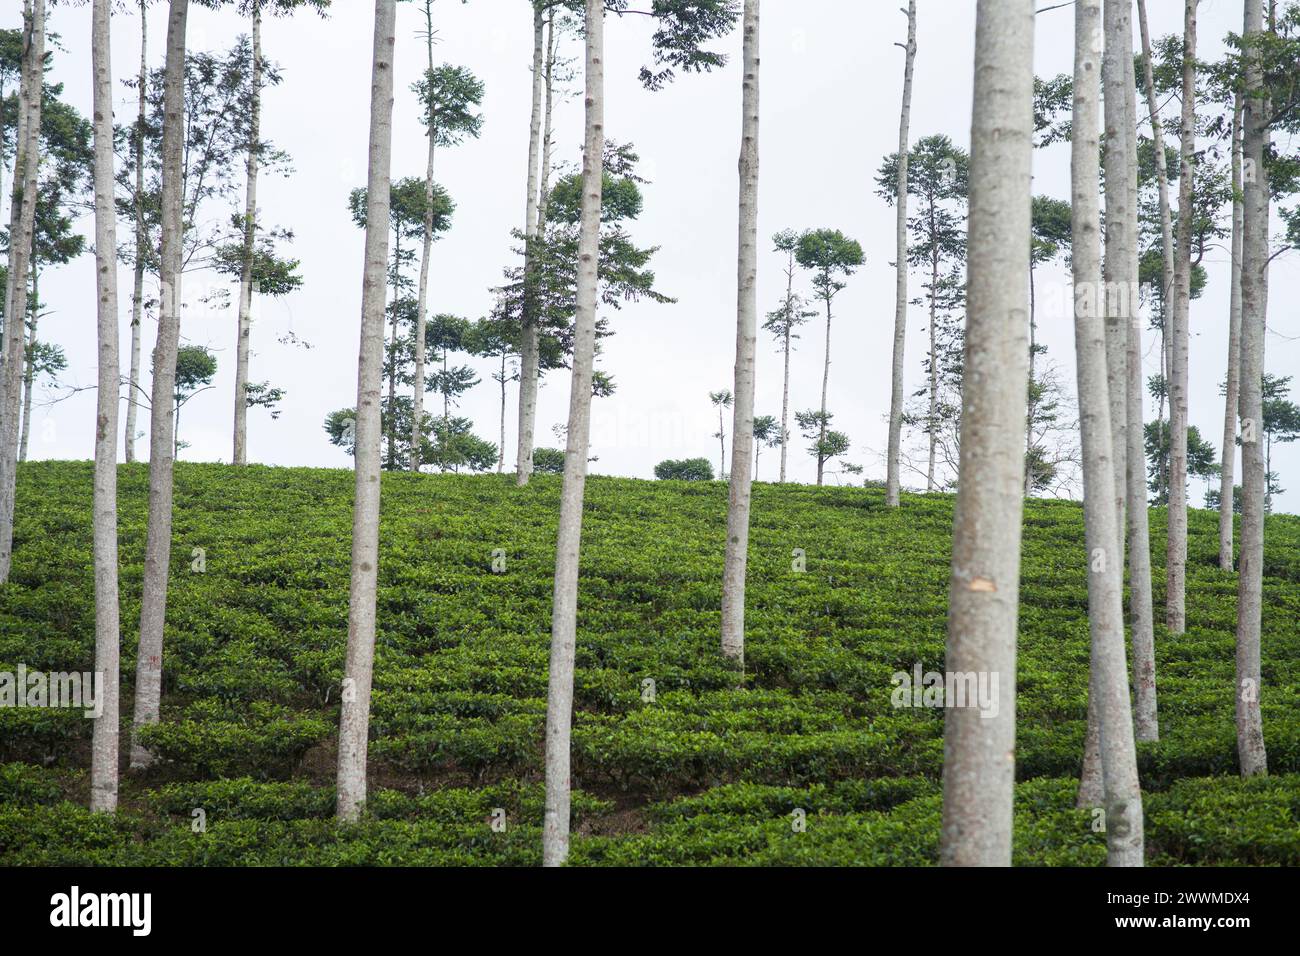 Trees in tea plantations Stock Photo